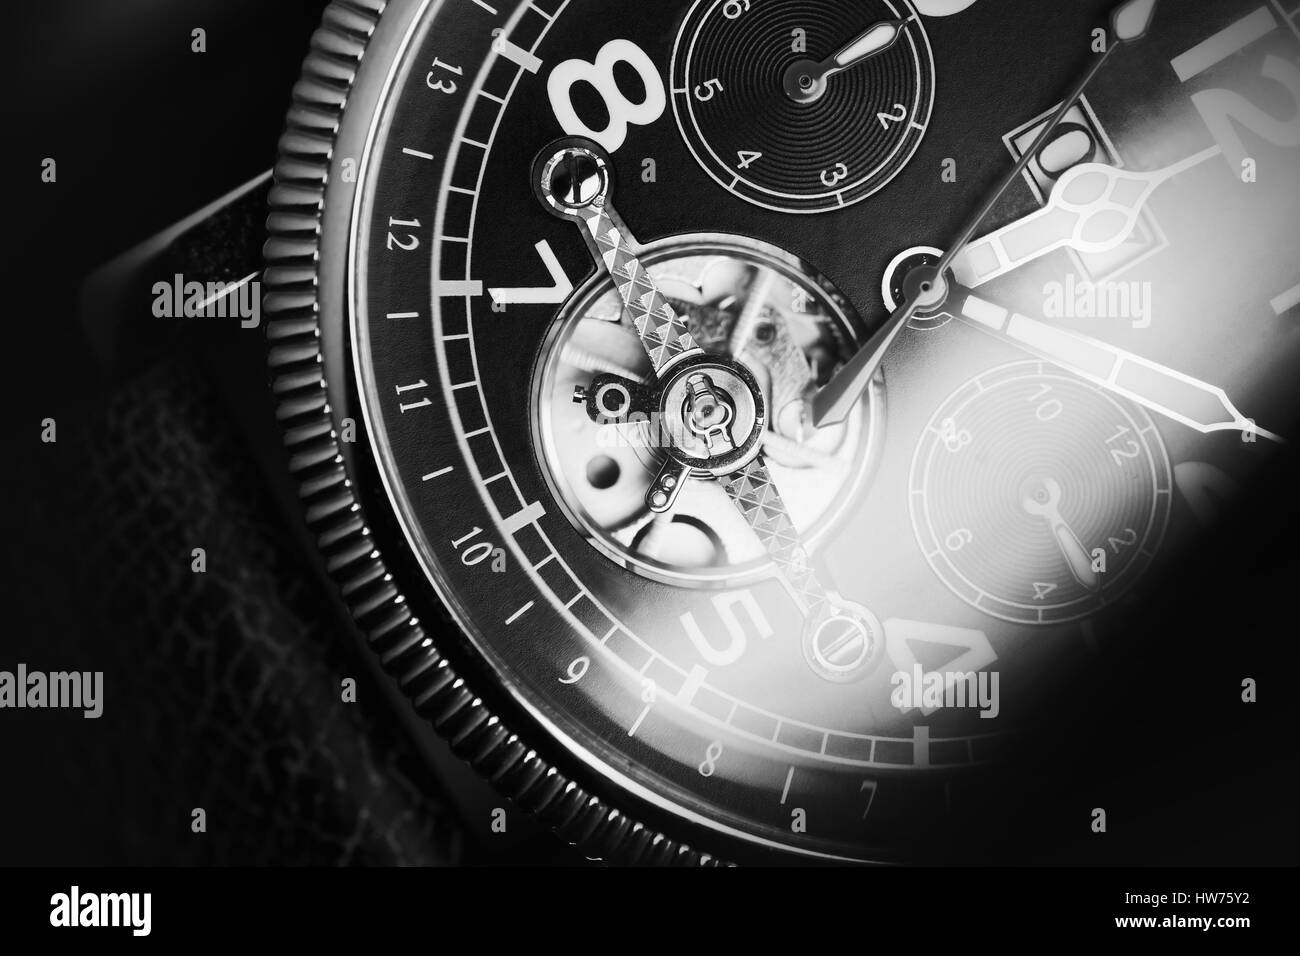 Mechanische Luxus Herren Armbanduhr mit automatische wicklung, Closeup Fragment Deal, schwarz / weiß Stockfoto